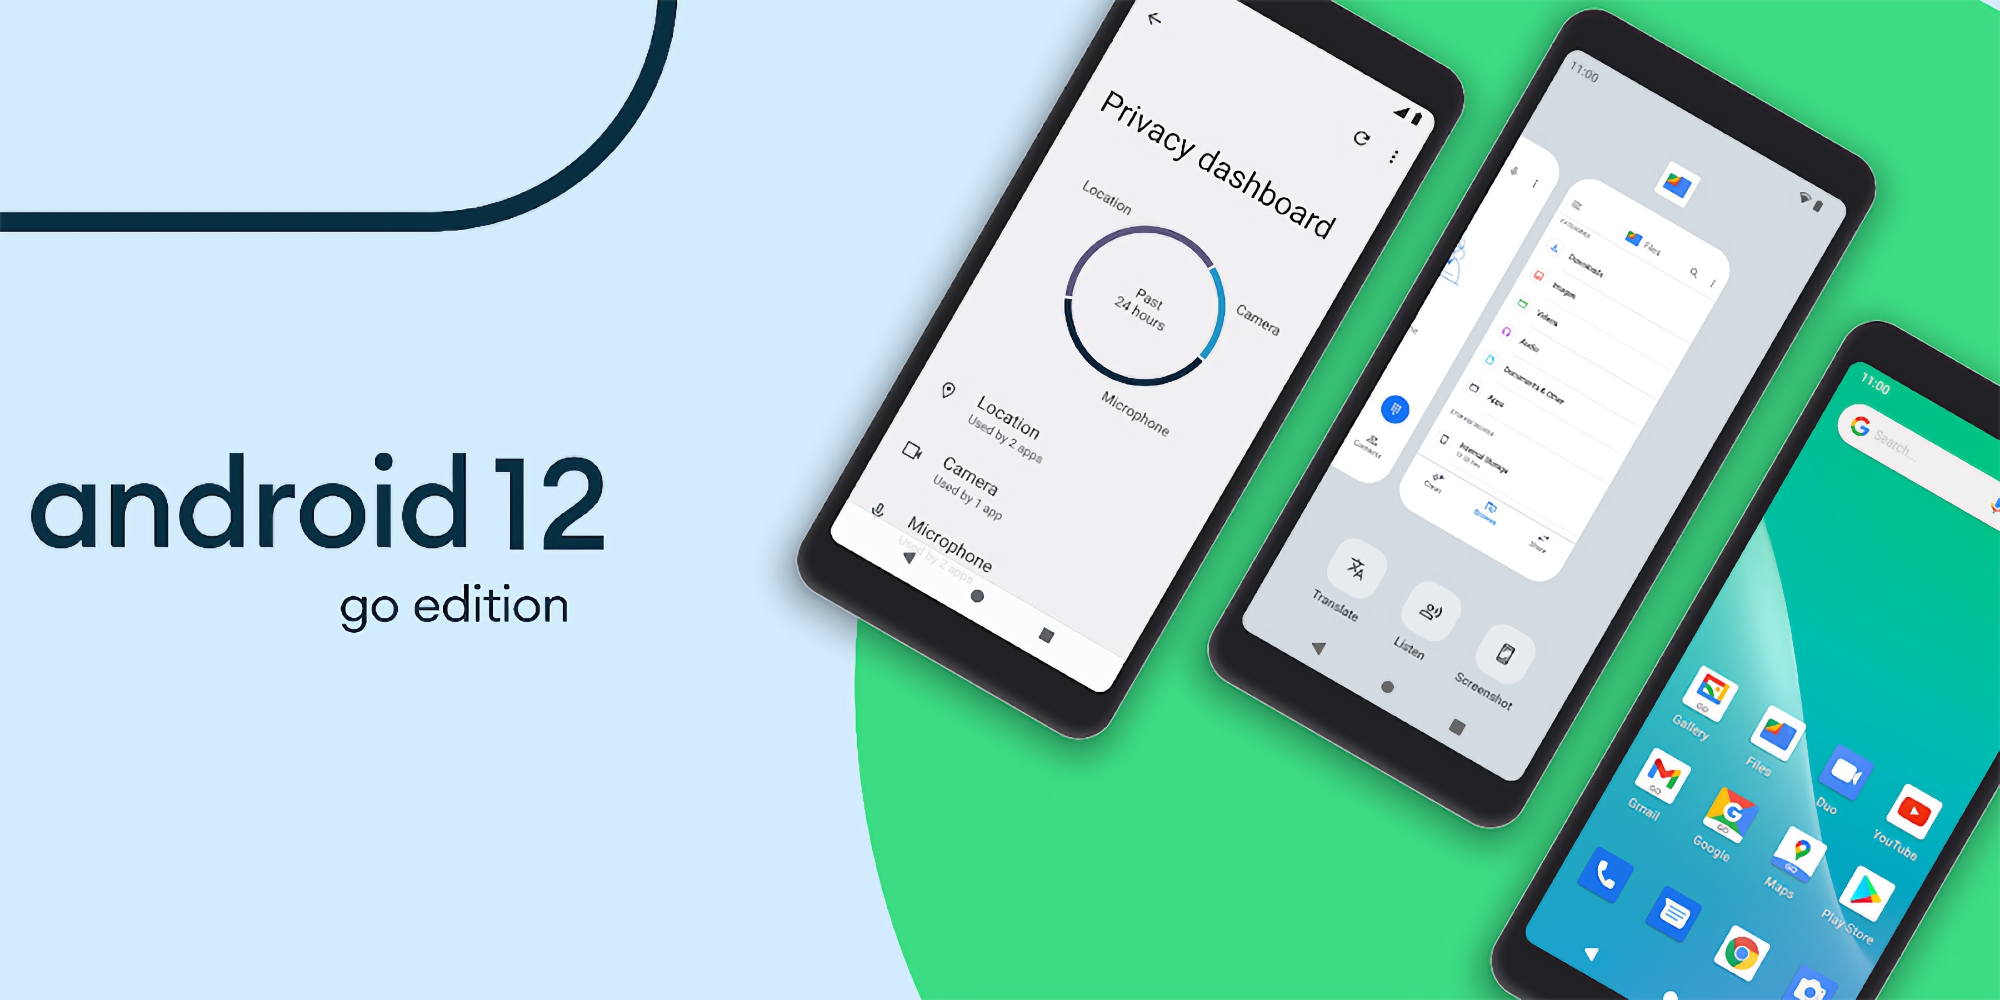 Google hat Android 12 (Go Edition) eingeführt: eine neue vereinfachte Version des Android-Betriebssystems